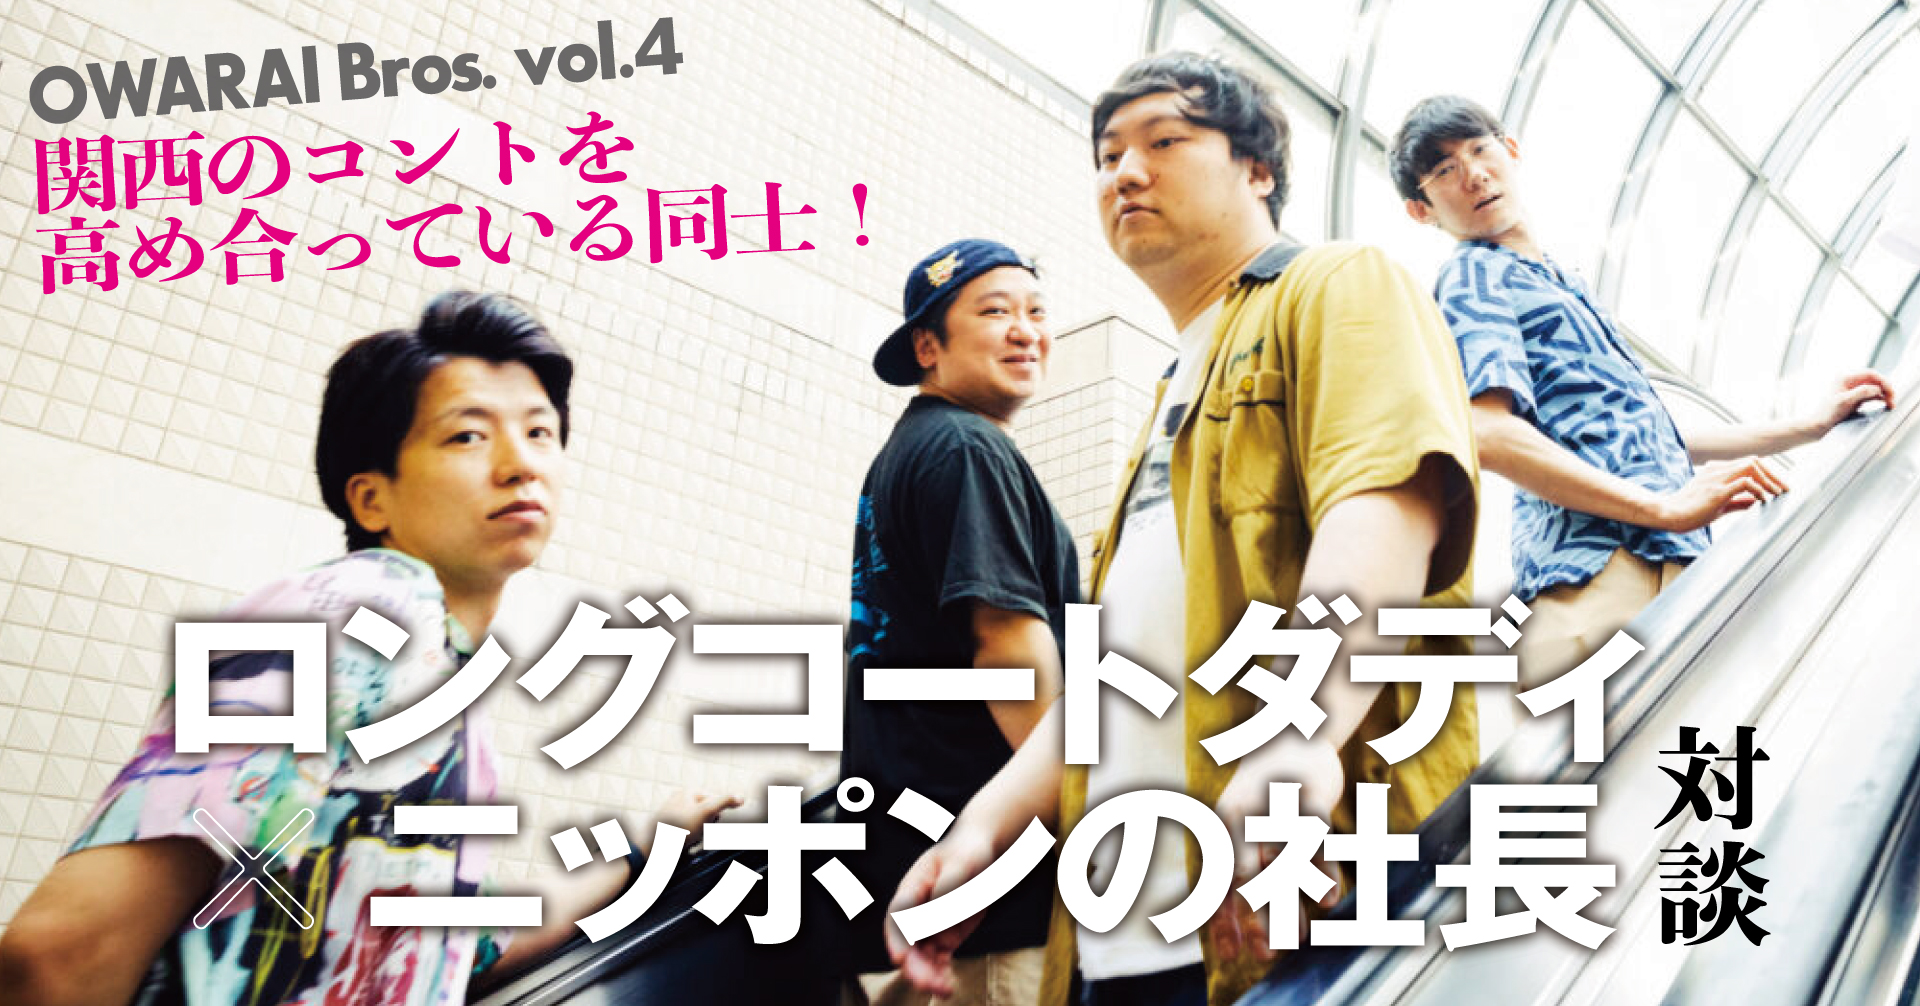 OWARAI Bros. Vol.4』関西のコントを高め合っている同士！ ロングコートダディ×ニッポンの社長対談 【TV Bros. WEB】